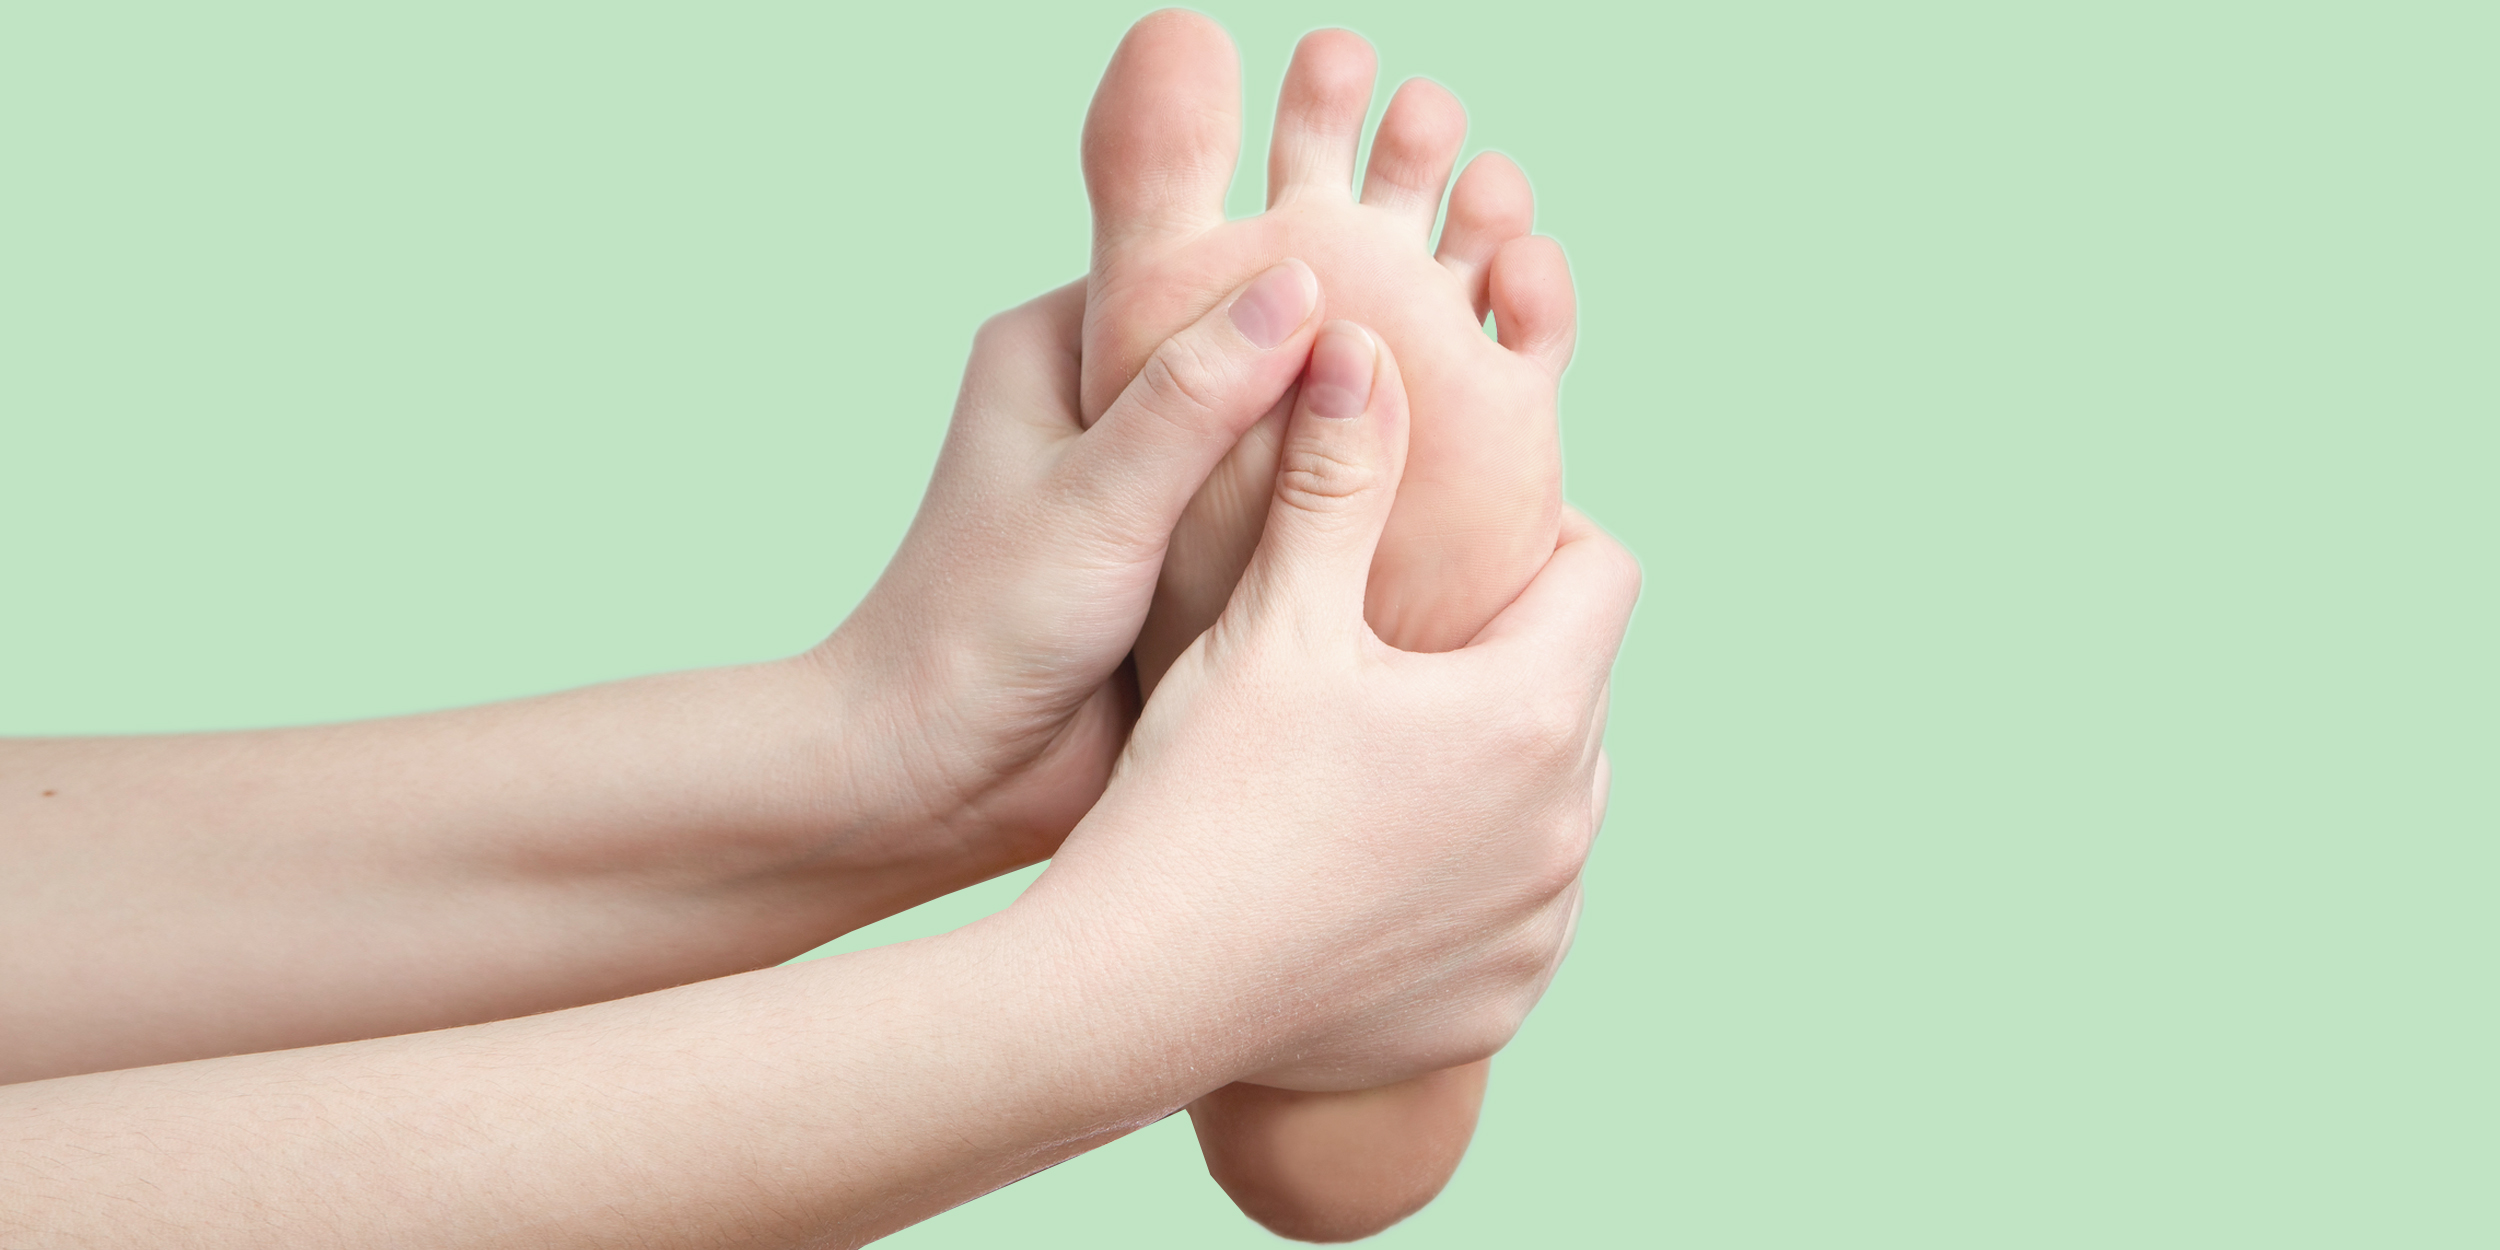 Пошаговая инструкция для массажа ног — эффективные техники и советы